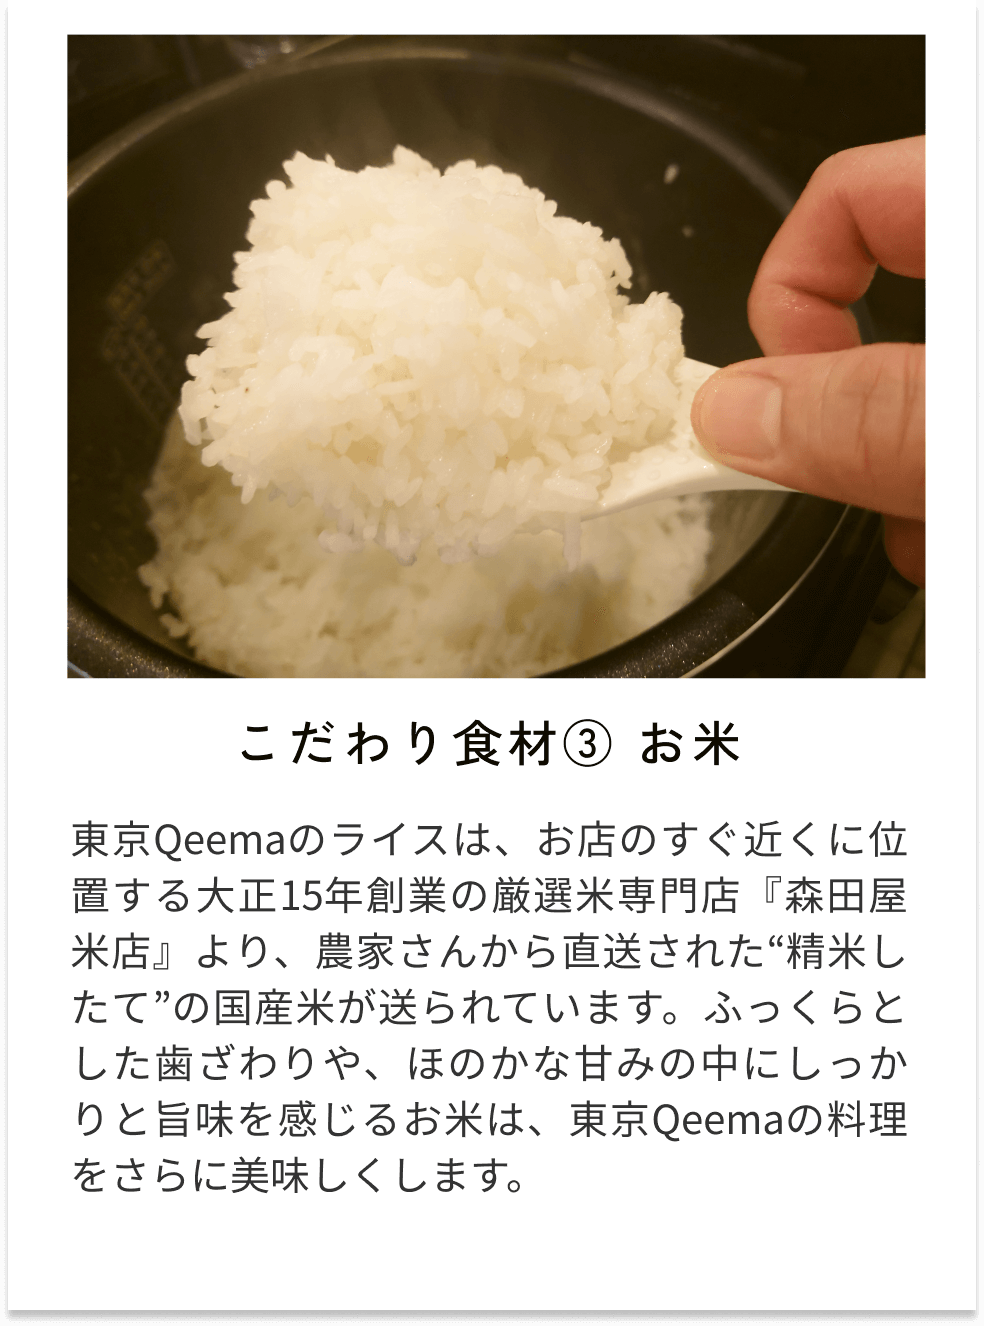 こだわり食材③お米 東京Qeemaのライスは、お店のすぐ近くに位置する大正15年創業の厳選米専門店『森田屋米店』より、農家さんから直送された“精米したて”の国産米が送られています。ふっくらとした歯ざわりや、ほのかな甘みの中にしっかりと旨味を感じるお米は、東京Qeemaの料理をさらに美味しくします。